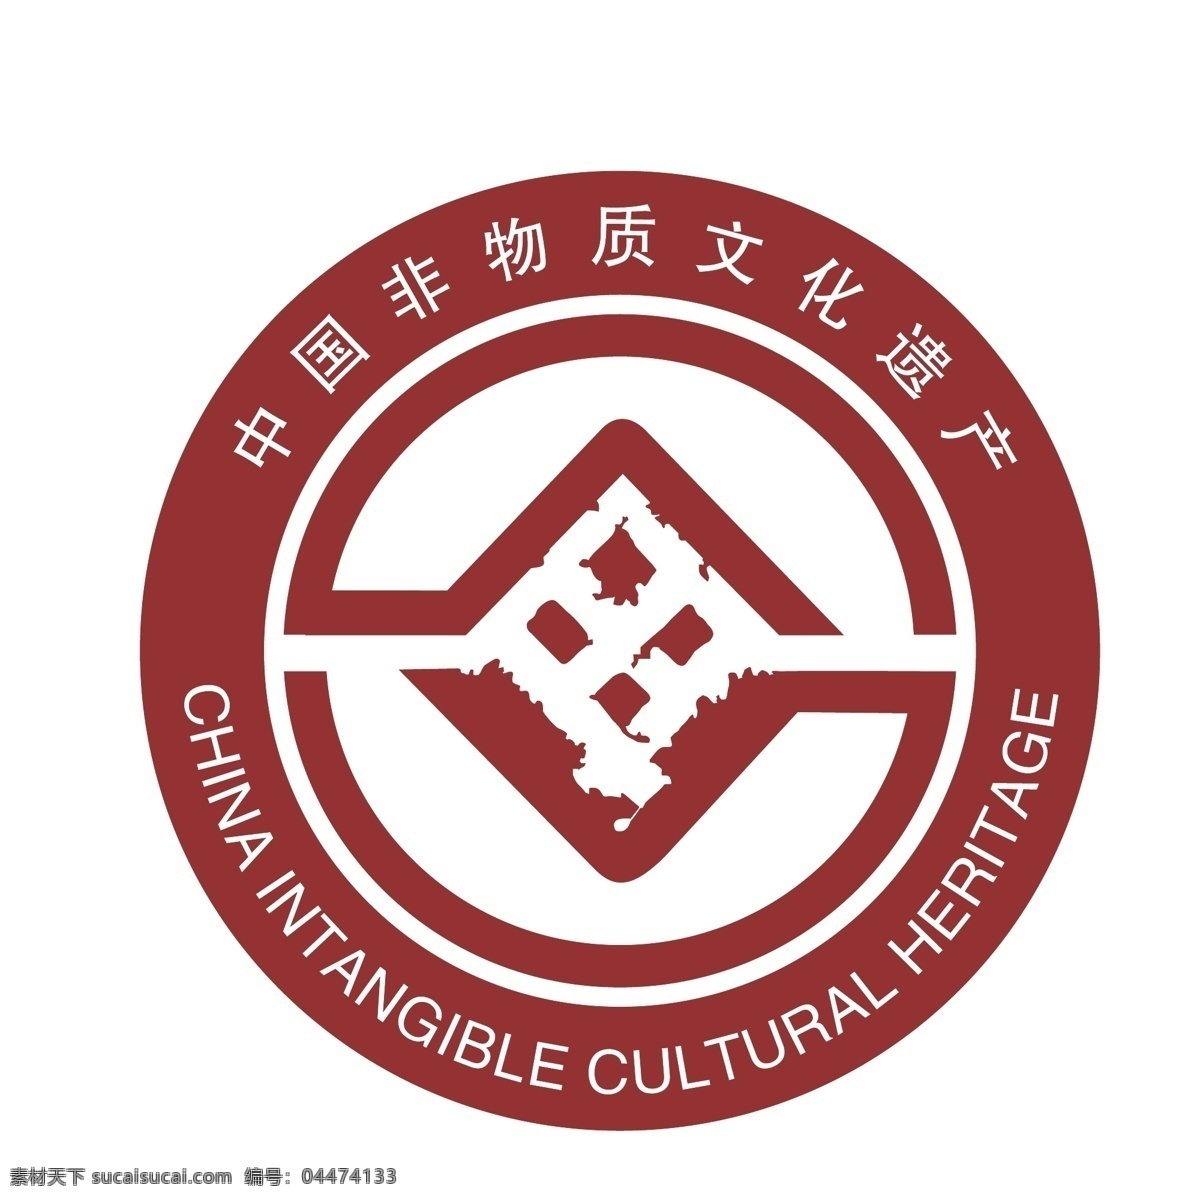 中国 非物质文化 遗产 logo 中国非物质 文化遗产 非遗 文化 logo设计